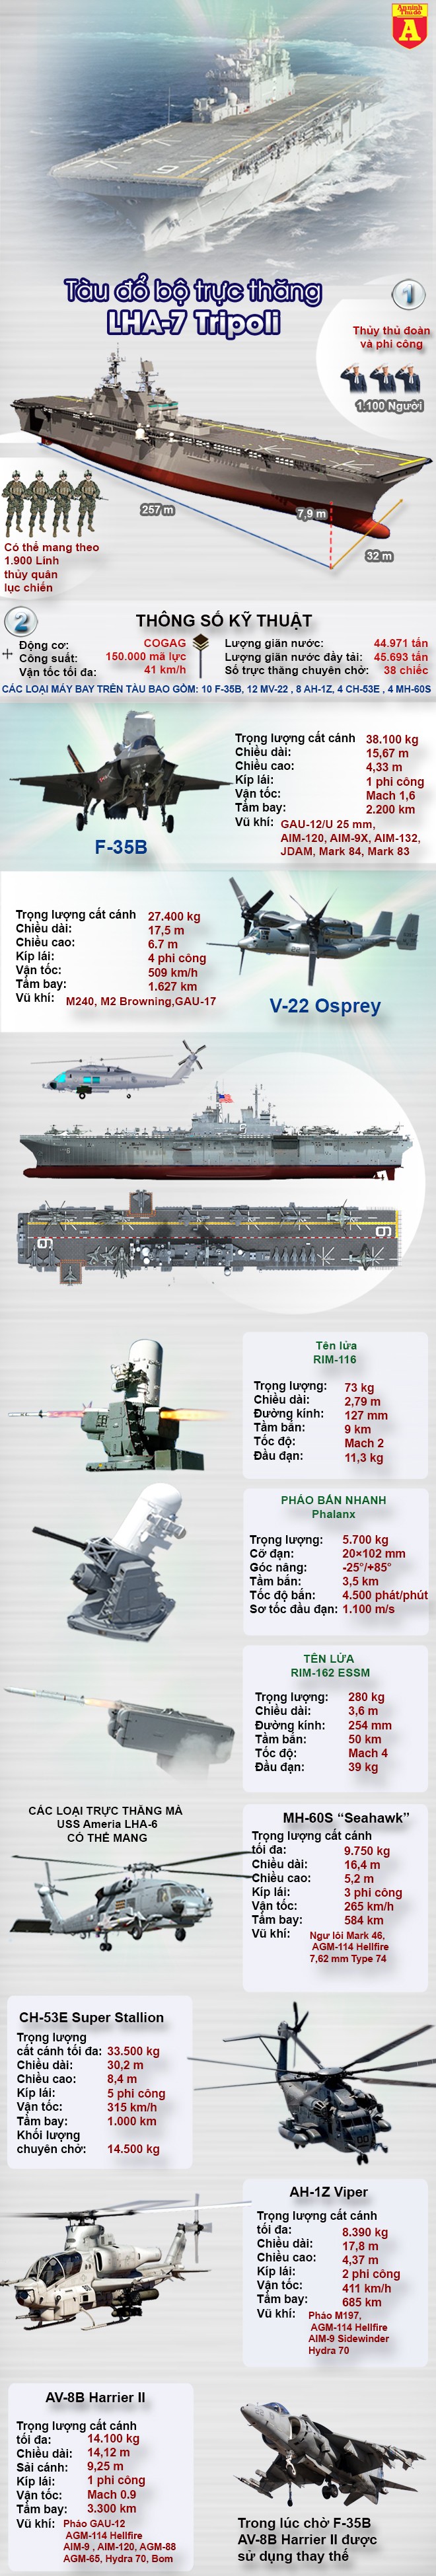 [Infographic] Siêu tàu đổ bộ vừa hạ thủy của Mỹ dư sức nhấn chìm tàu sân bay Trung Quốc? ảnh 2